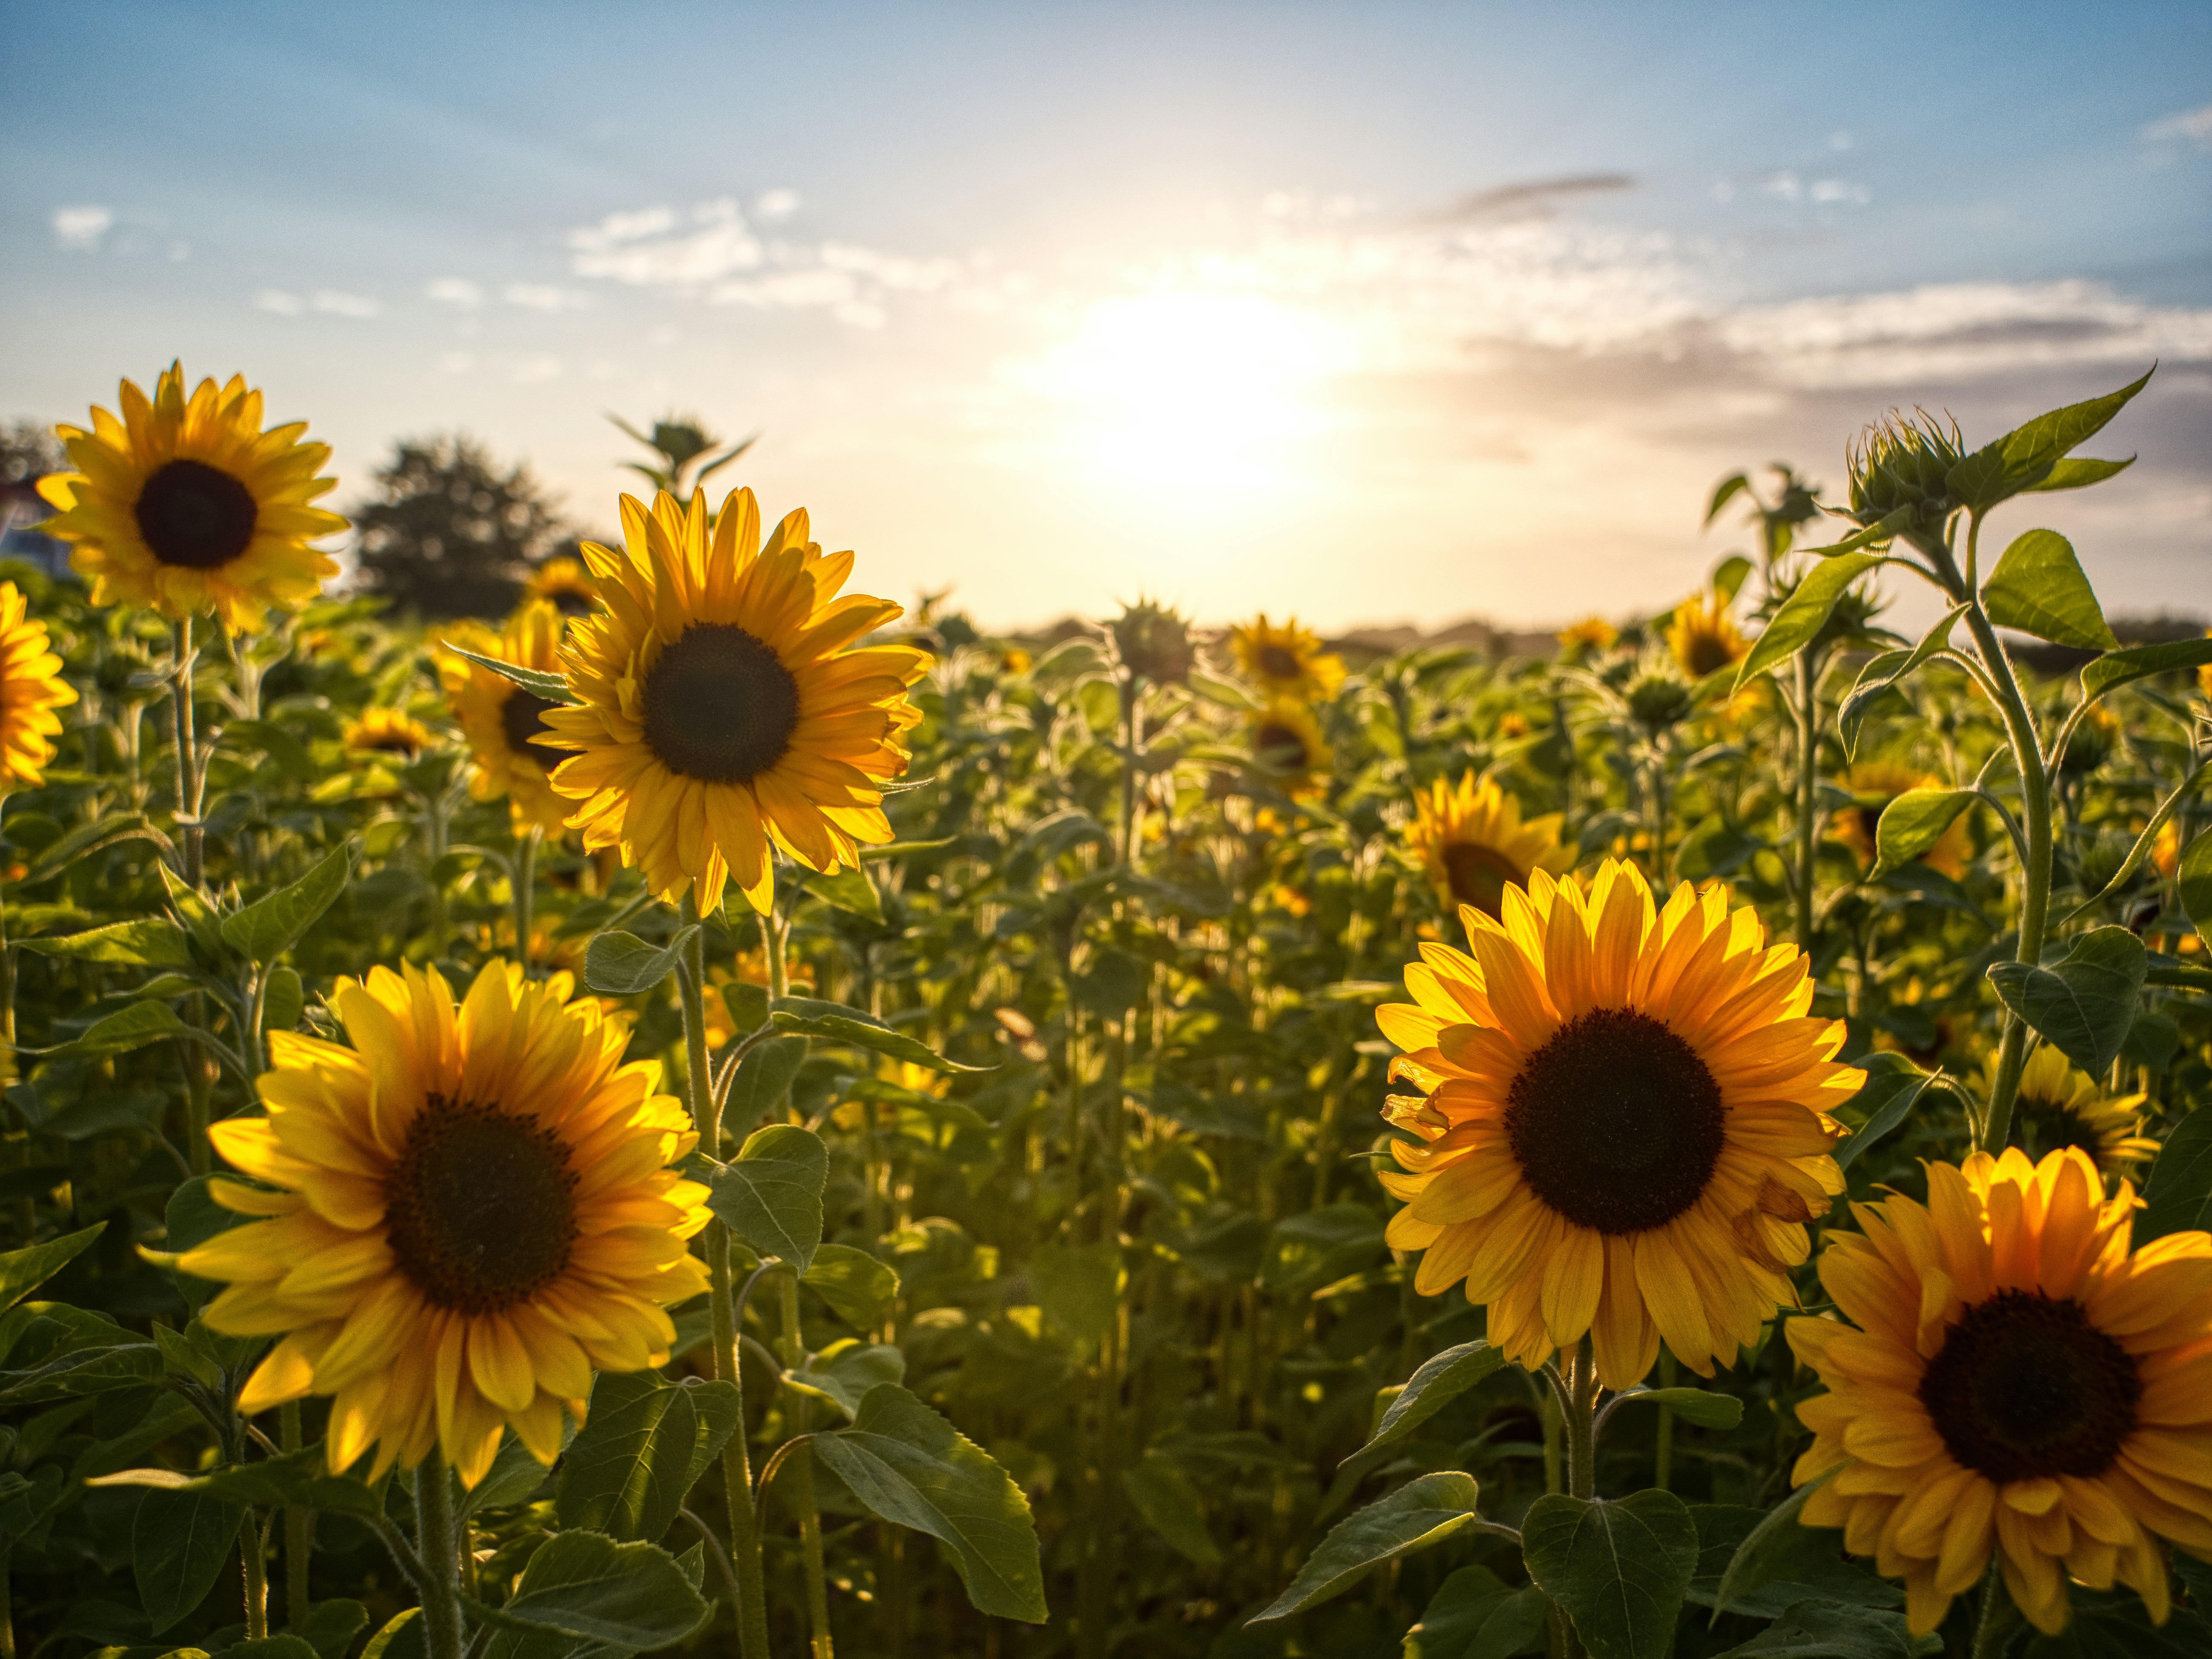 sunflower field under blue sky during daytime